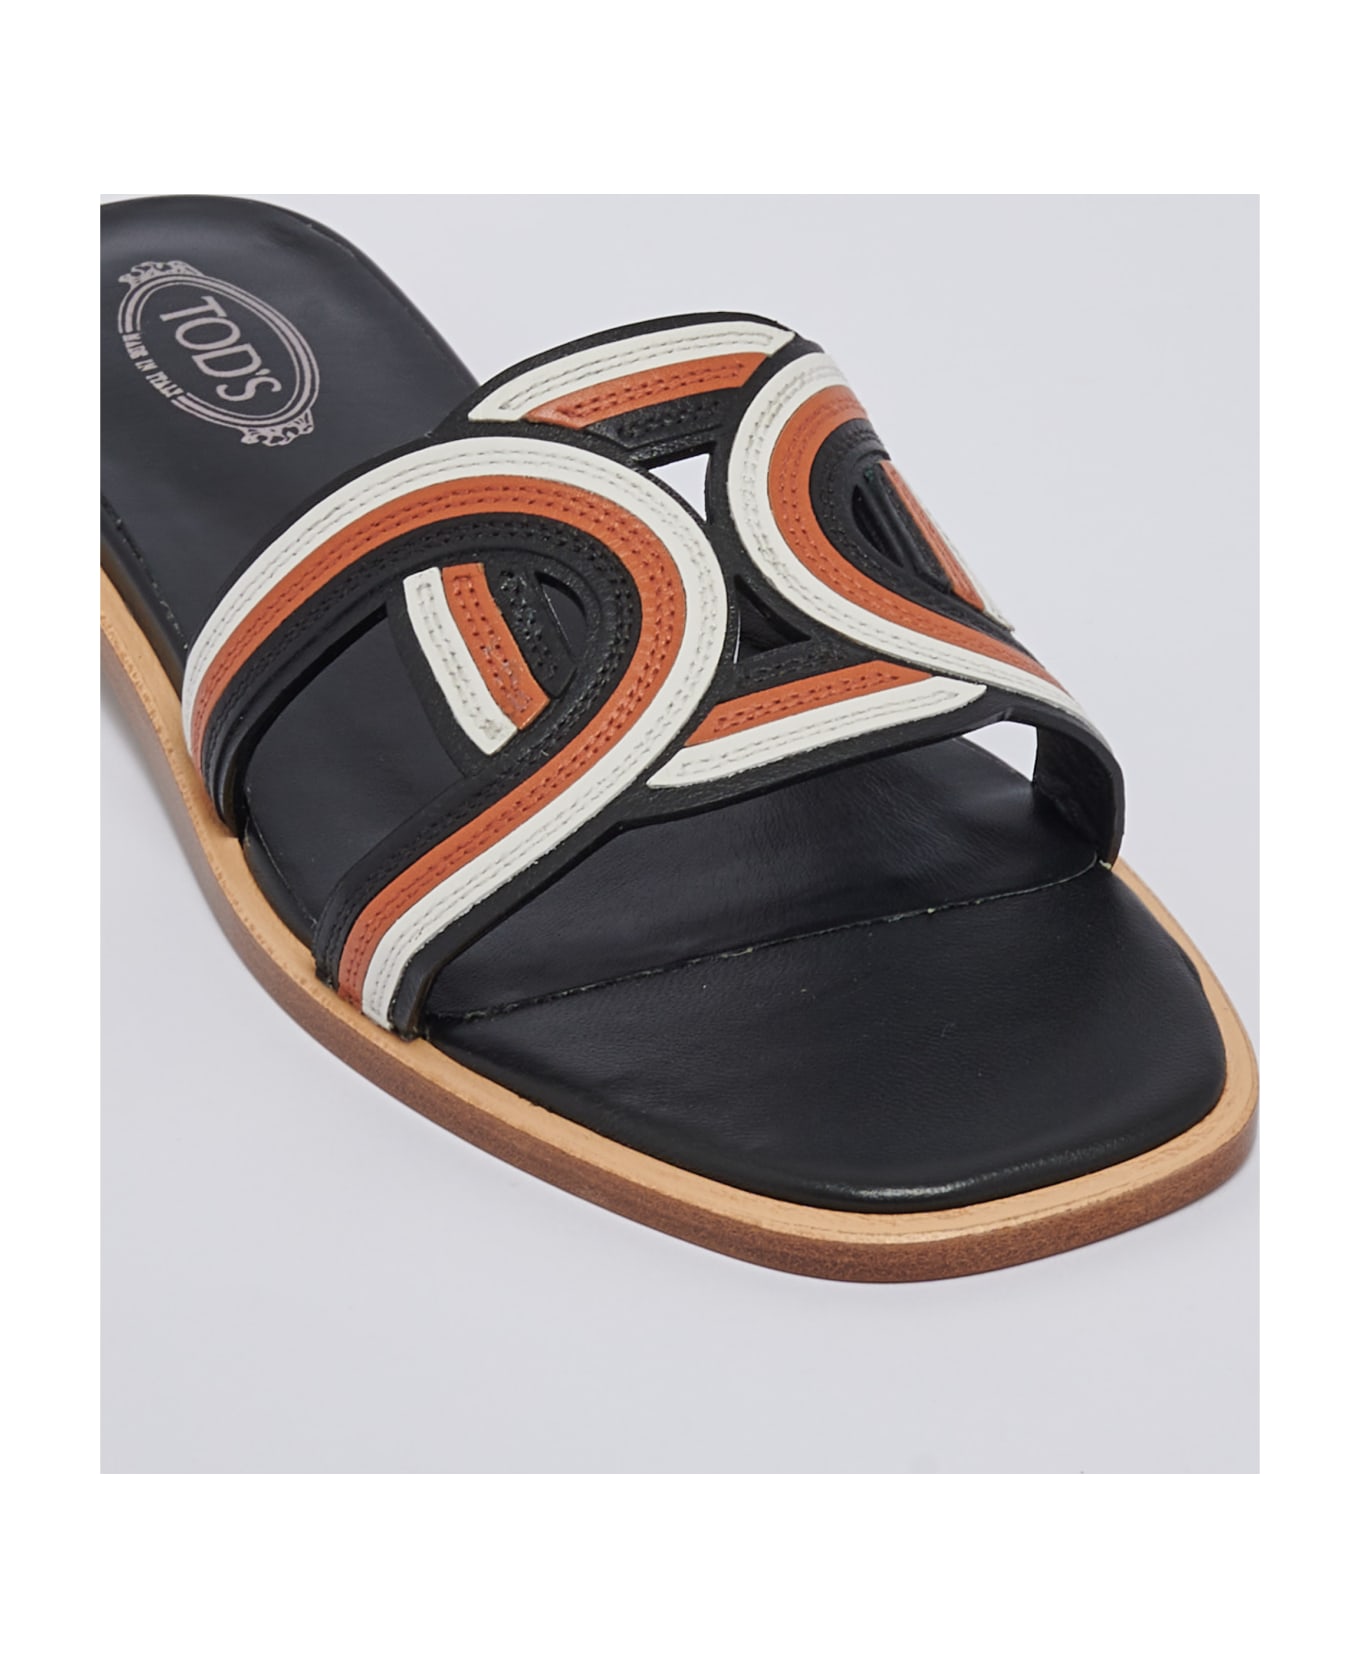 Tod's Sandalo Cuoio 70k Catena Multicolor Sandal - NERO-CUOIO